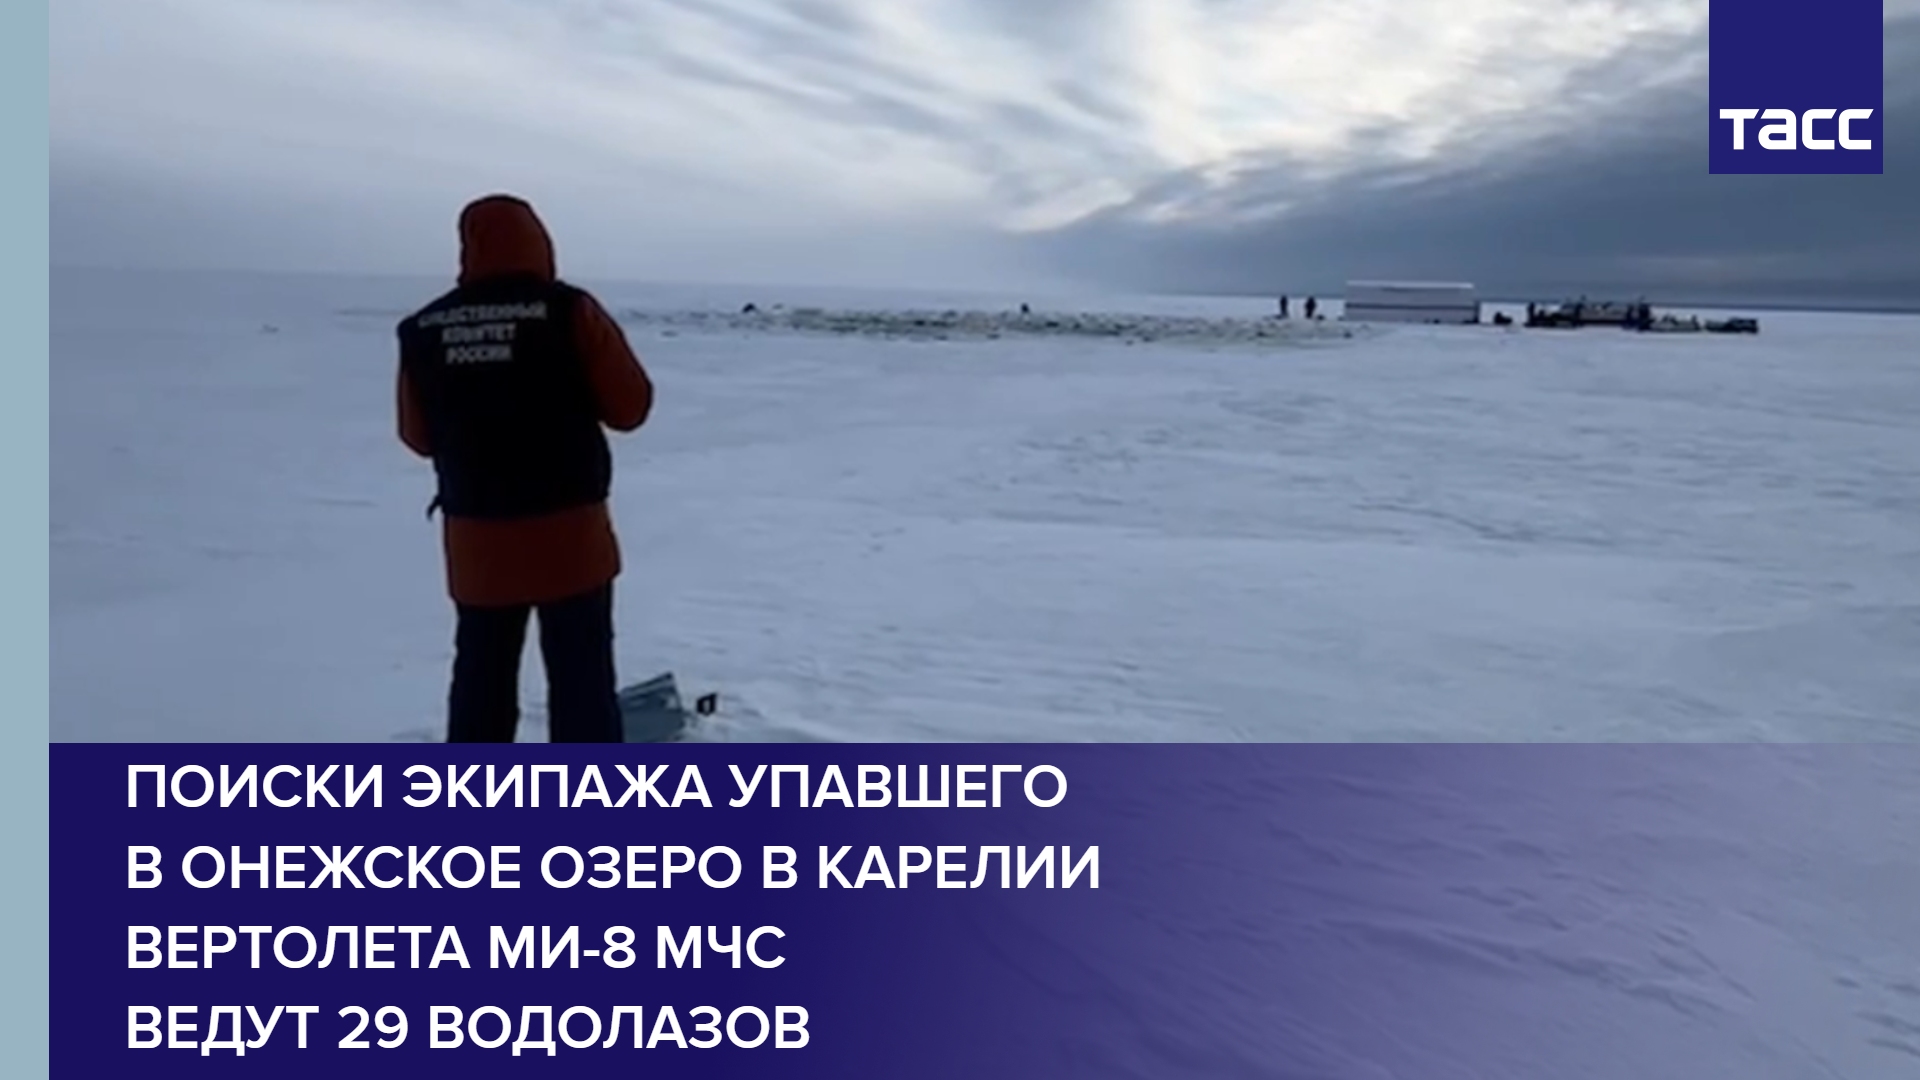 Поиски экипажа упавшего в Онежское озеро в Карелии вертолета Ми-8 МЧС ведут 29 водолазов #shorts